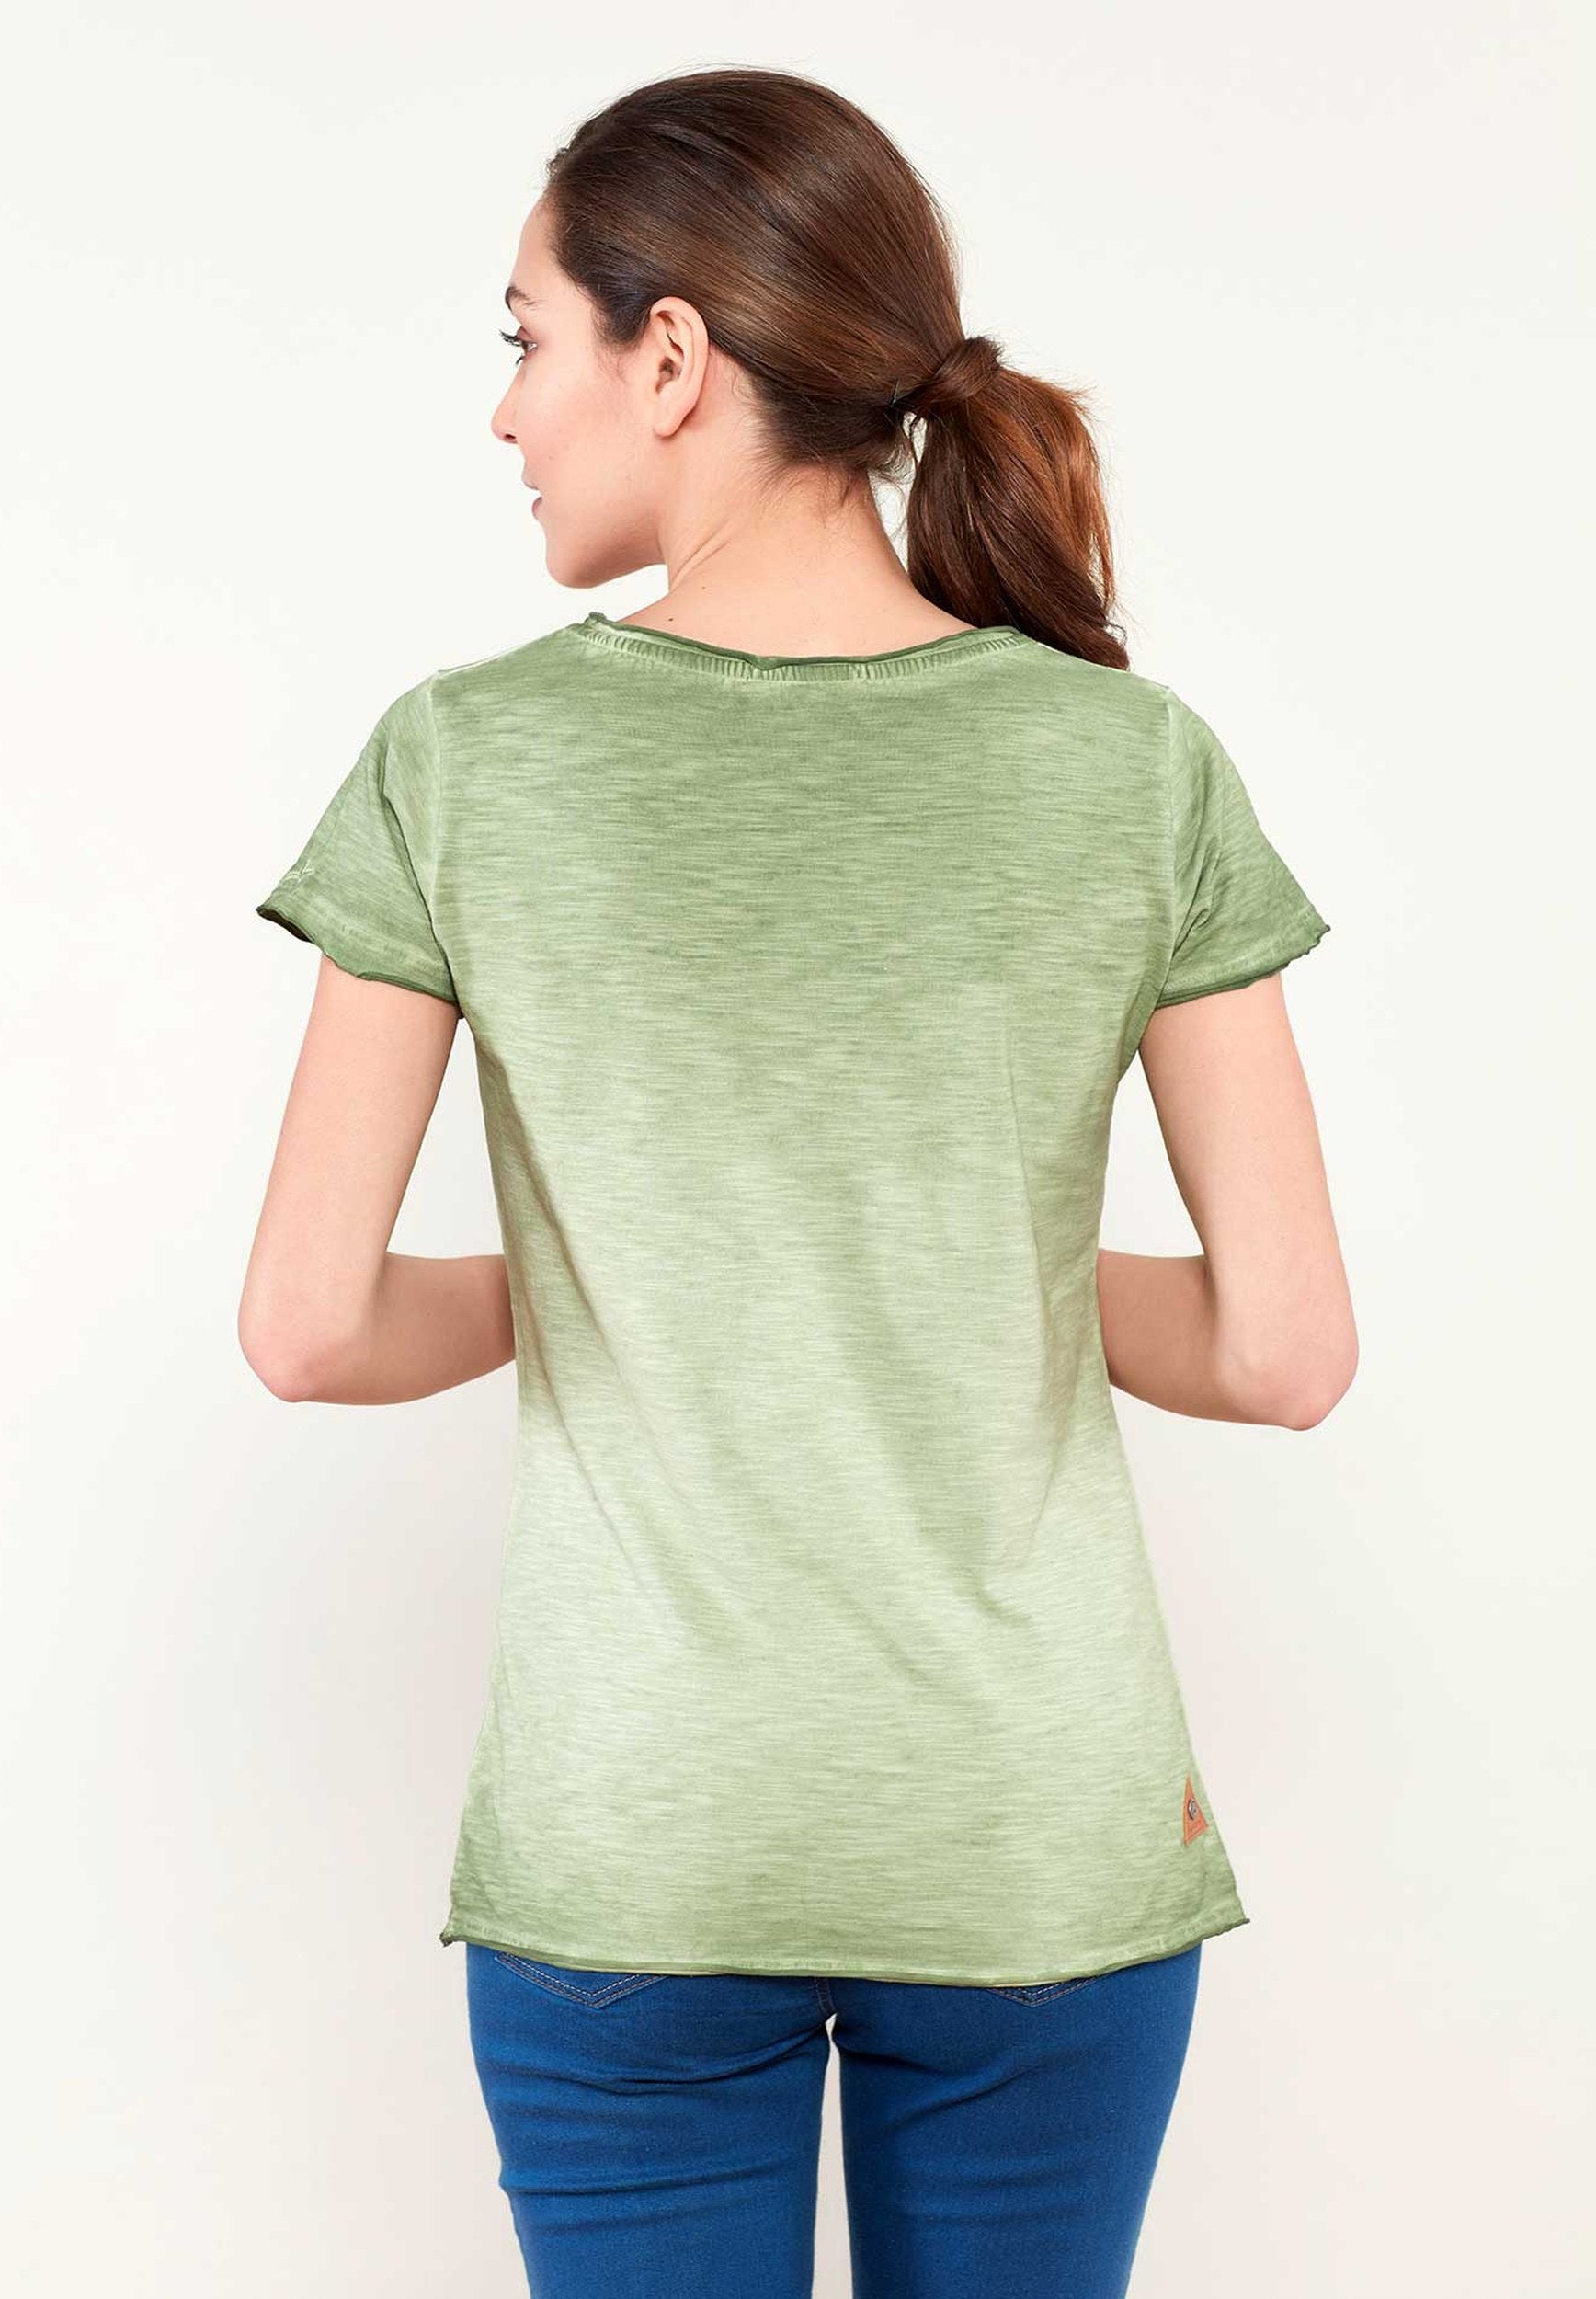 Bedrucktes T-Shirt aus Bio-Baumwolle mit Fahrrad Motive